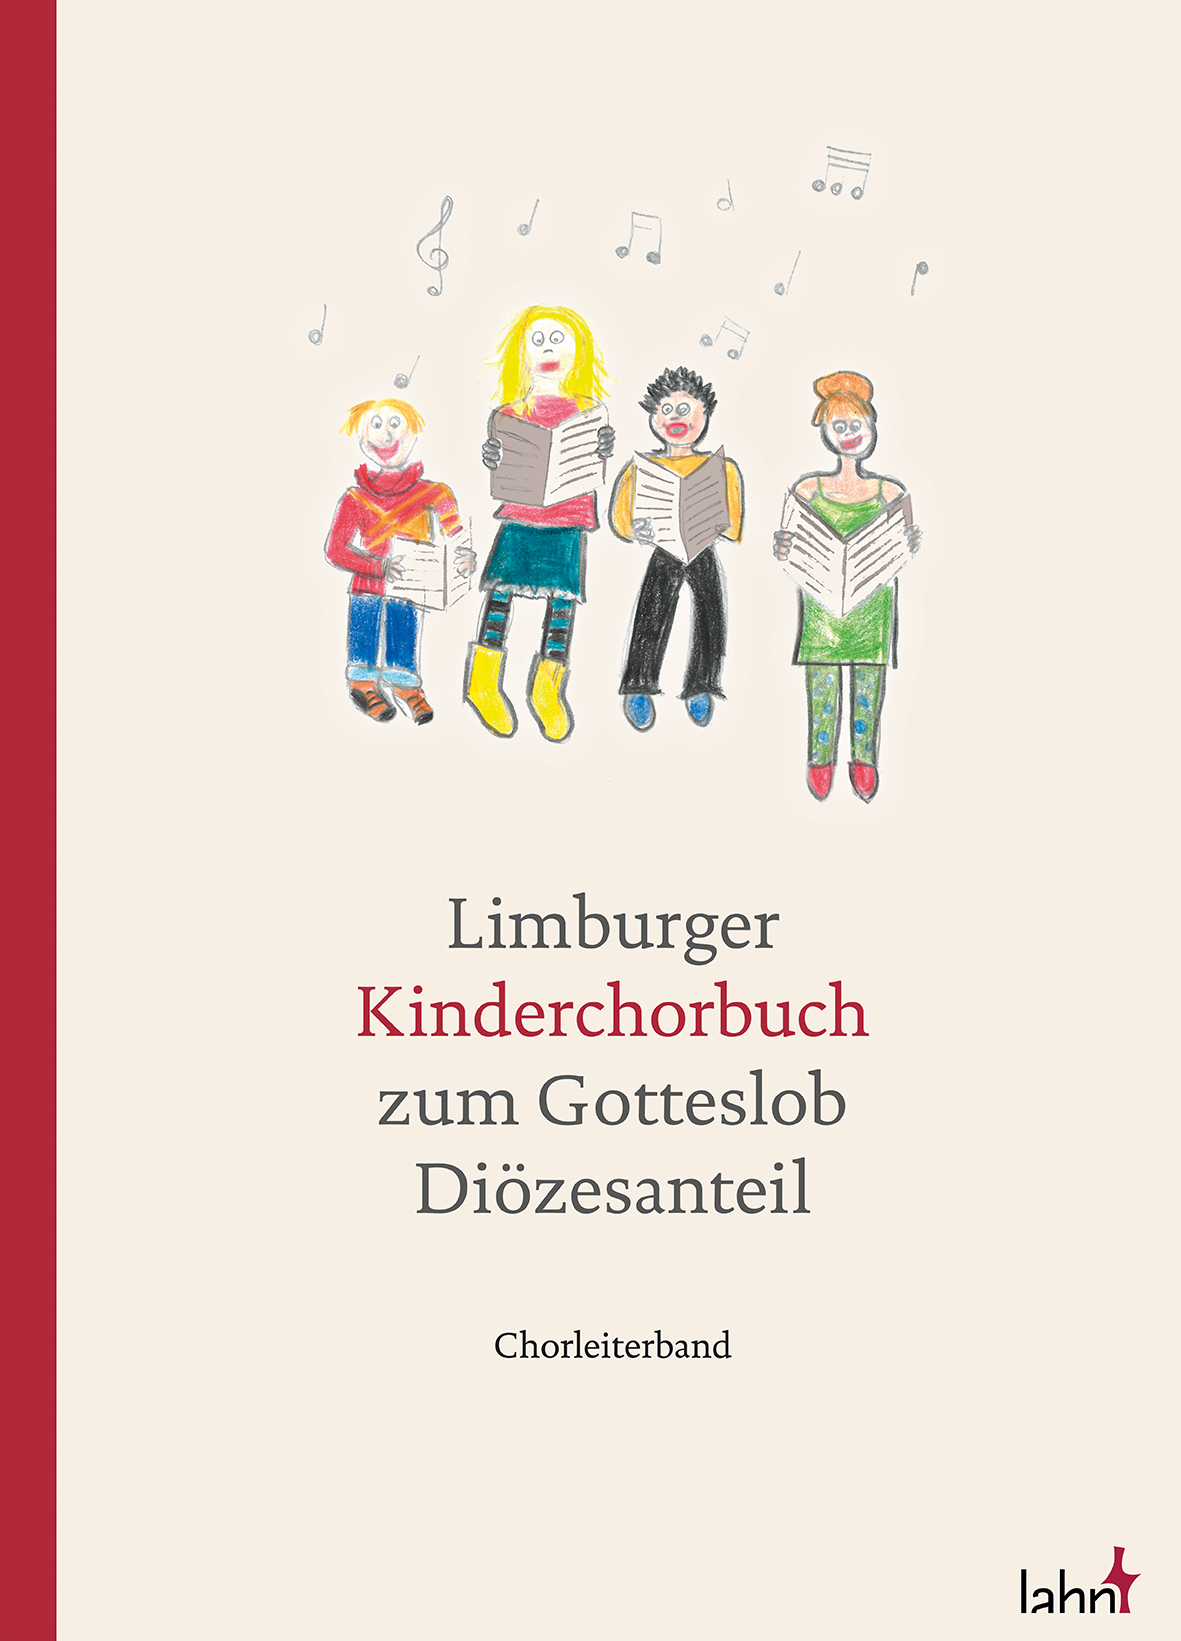 Limburger Kinderchorbuch zum Gotteslob – Diözesanteil. Chorleiterband